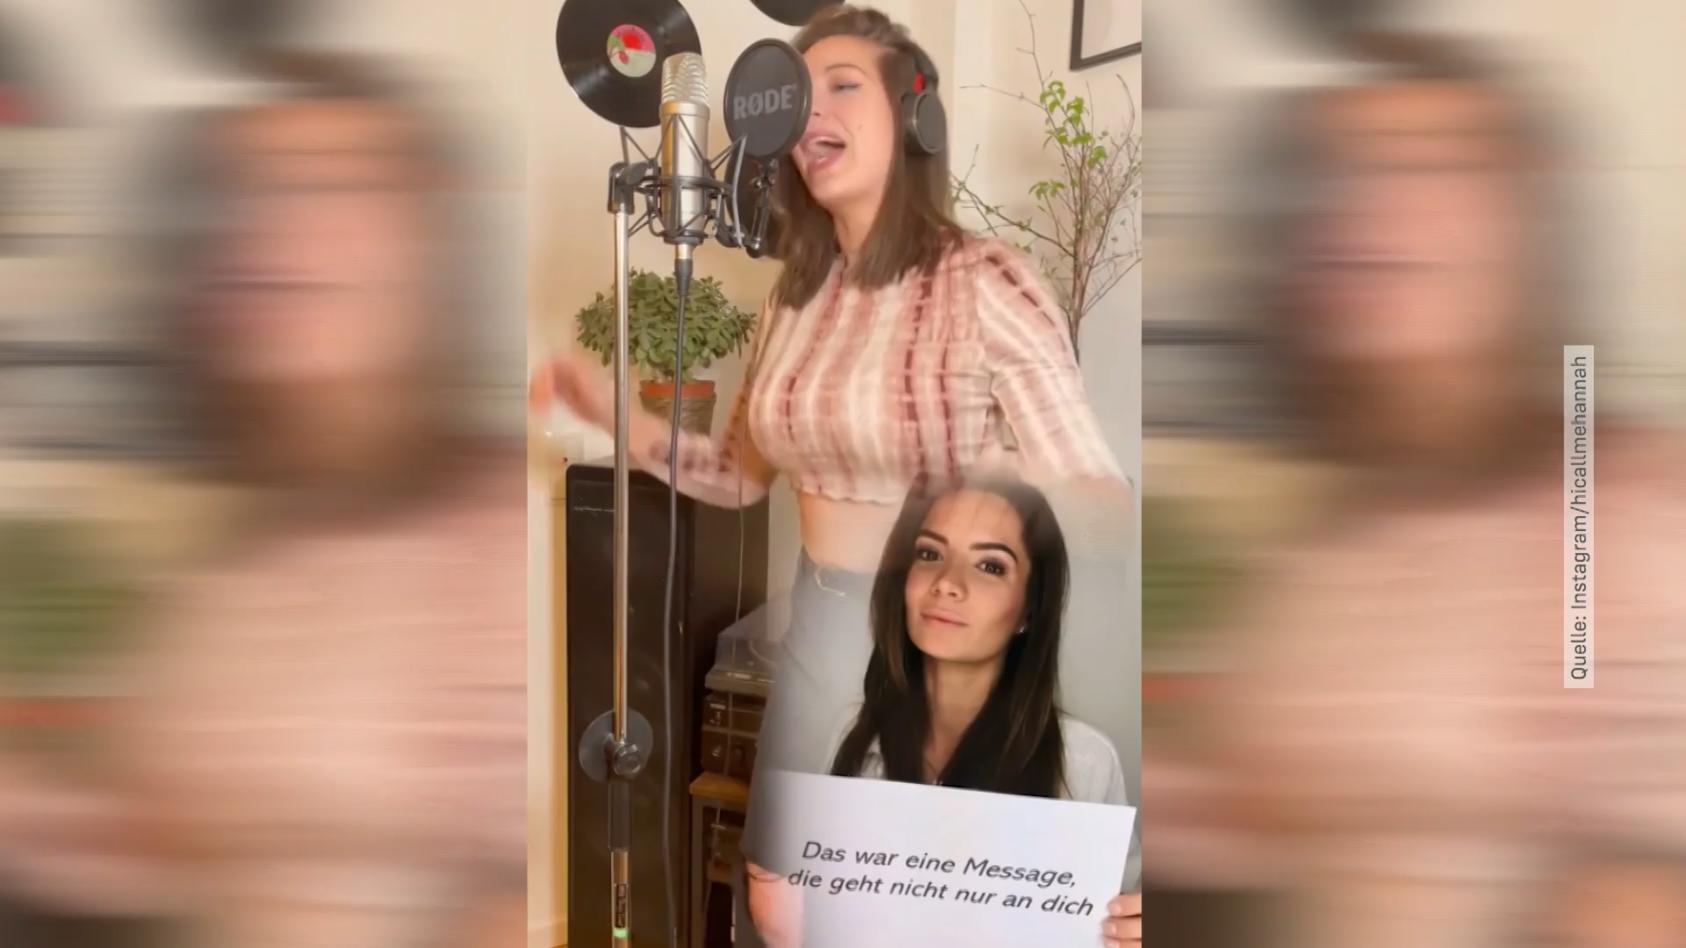 Bachelor-Kandidatin Hannah rappt jetzt Song gegen Hass im Netz